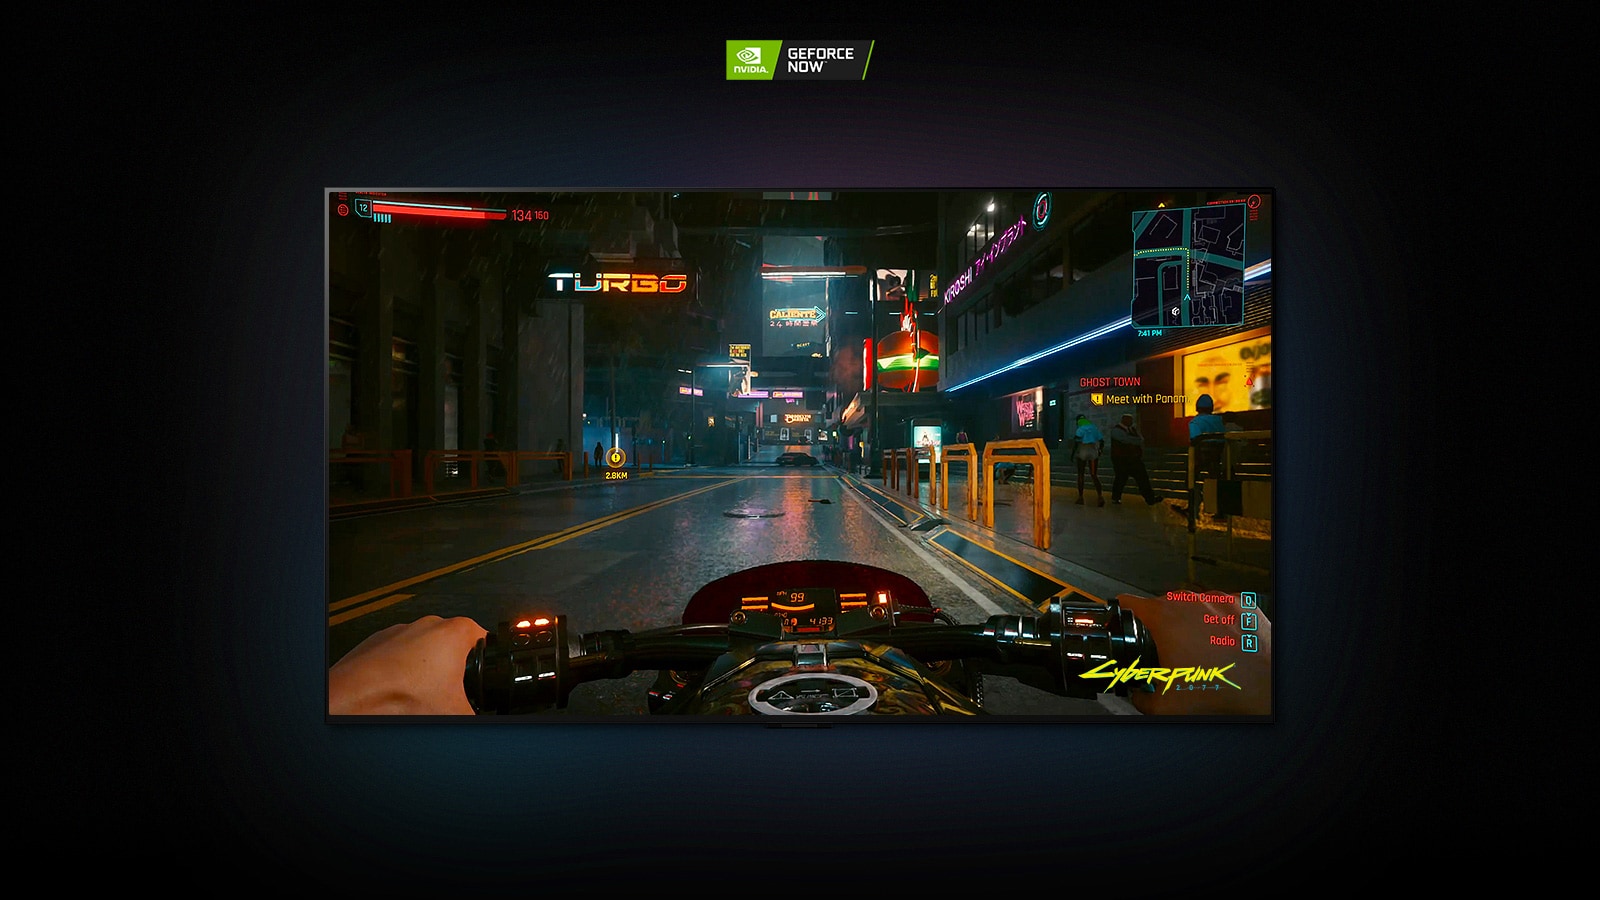 W scenie z gry Cyberpunk 2077 pokazanej na ekranie telewizora LG OLED gracz jedzie oświetloną neonami ulicą na motocyklu.